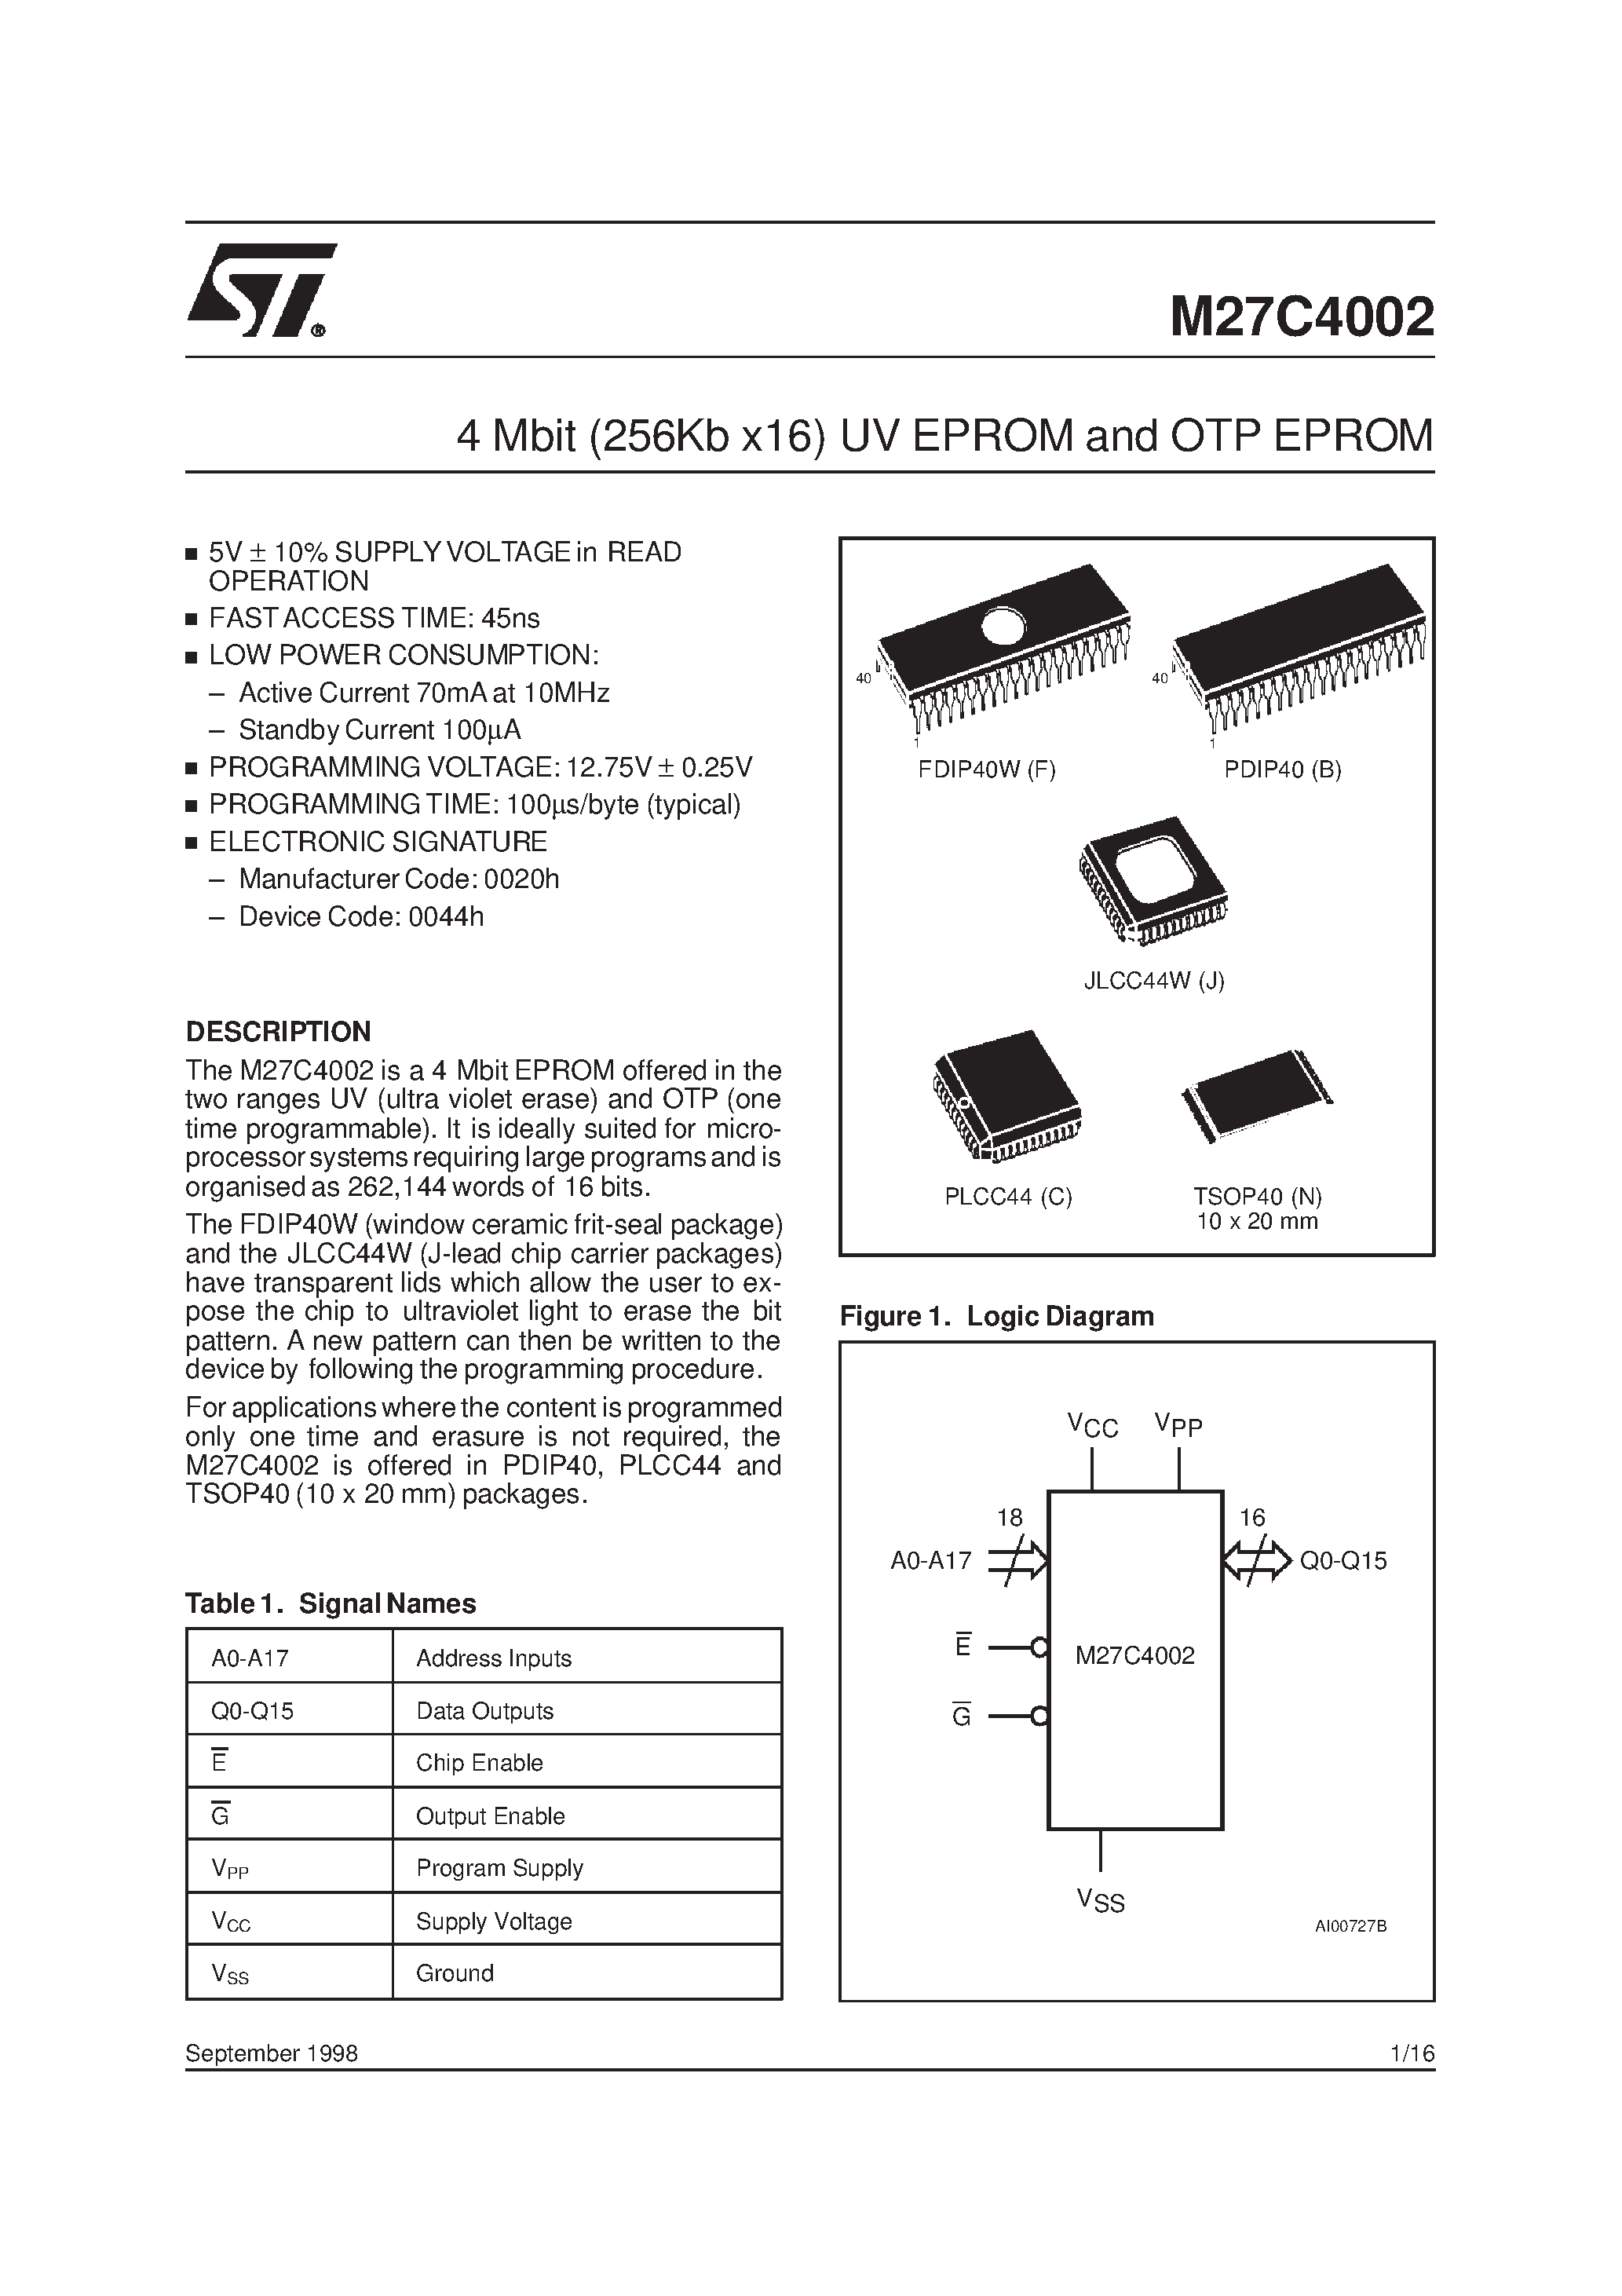 Datasheet M27C4002-10XB1X - 4 Mbit 256Kb x16 UV EPROM and OTP EPROM page 1